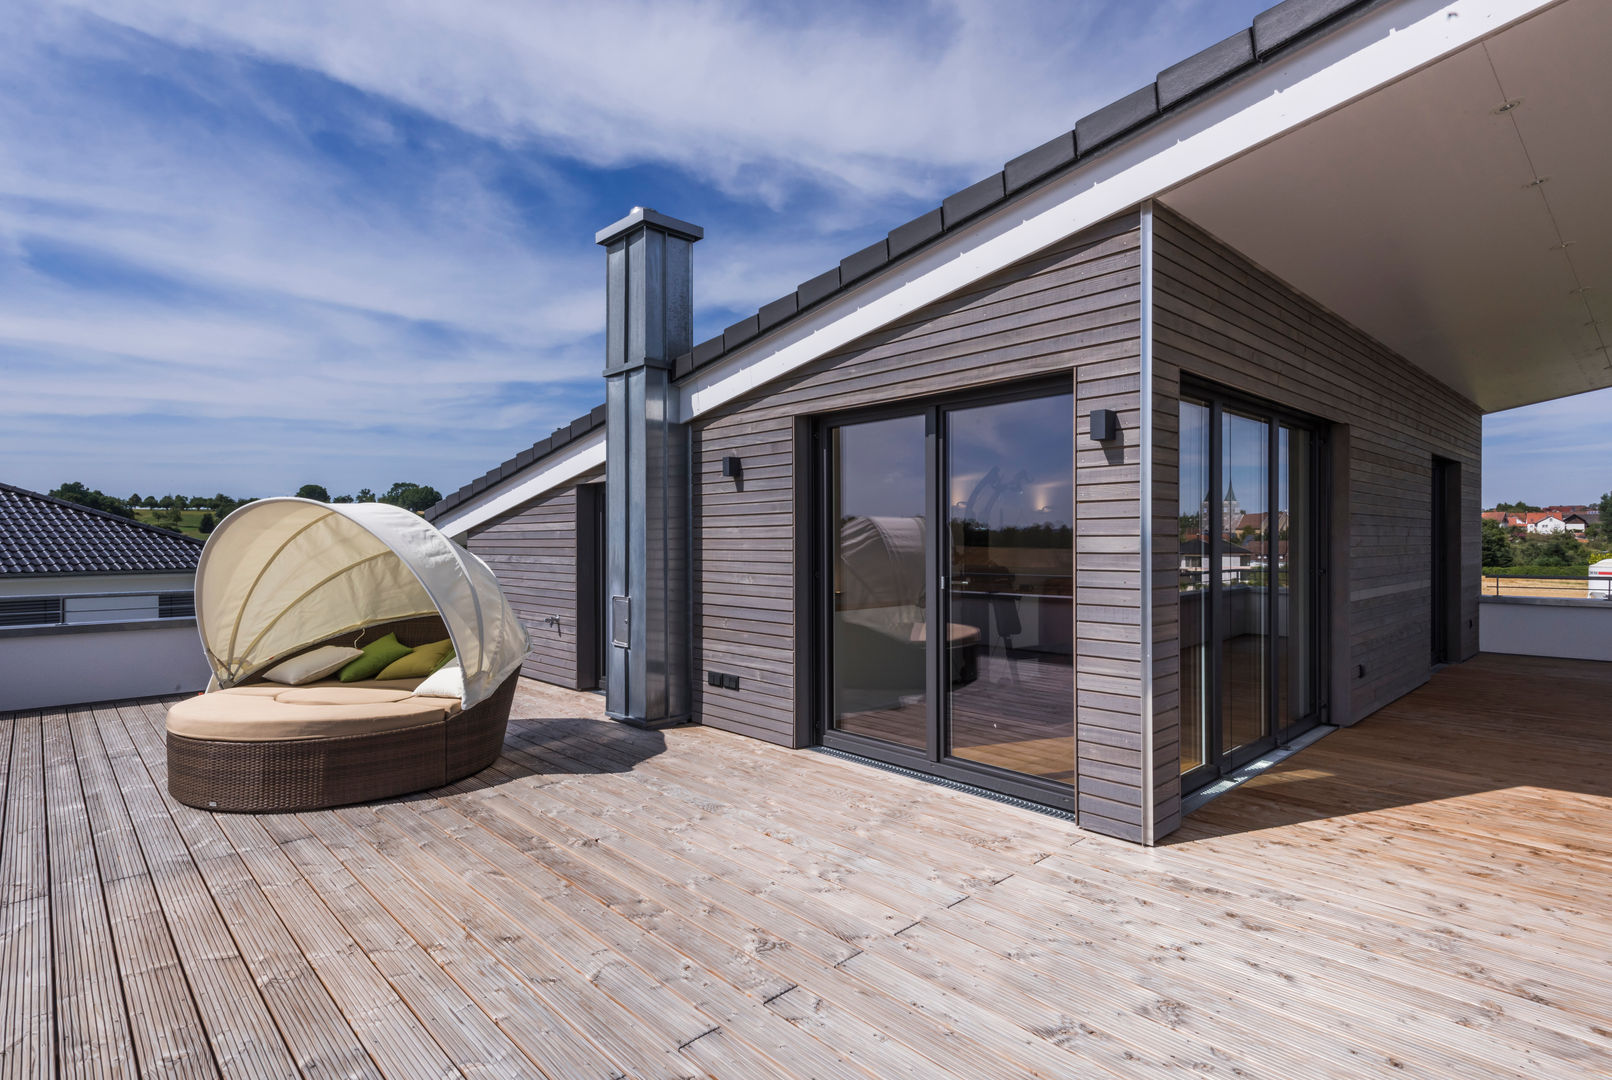 Ökologisch wohnen auf höchstem Niveau, KitzlingerHaus GmbH & Co. KG KitzlingerHaus GmbH & Co. KG Moderne balkons, veranda's en terrassen Accessoires & decoratie